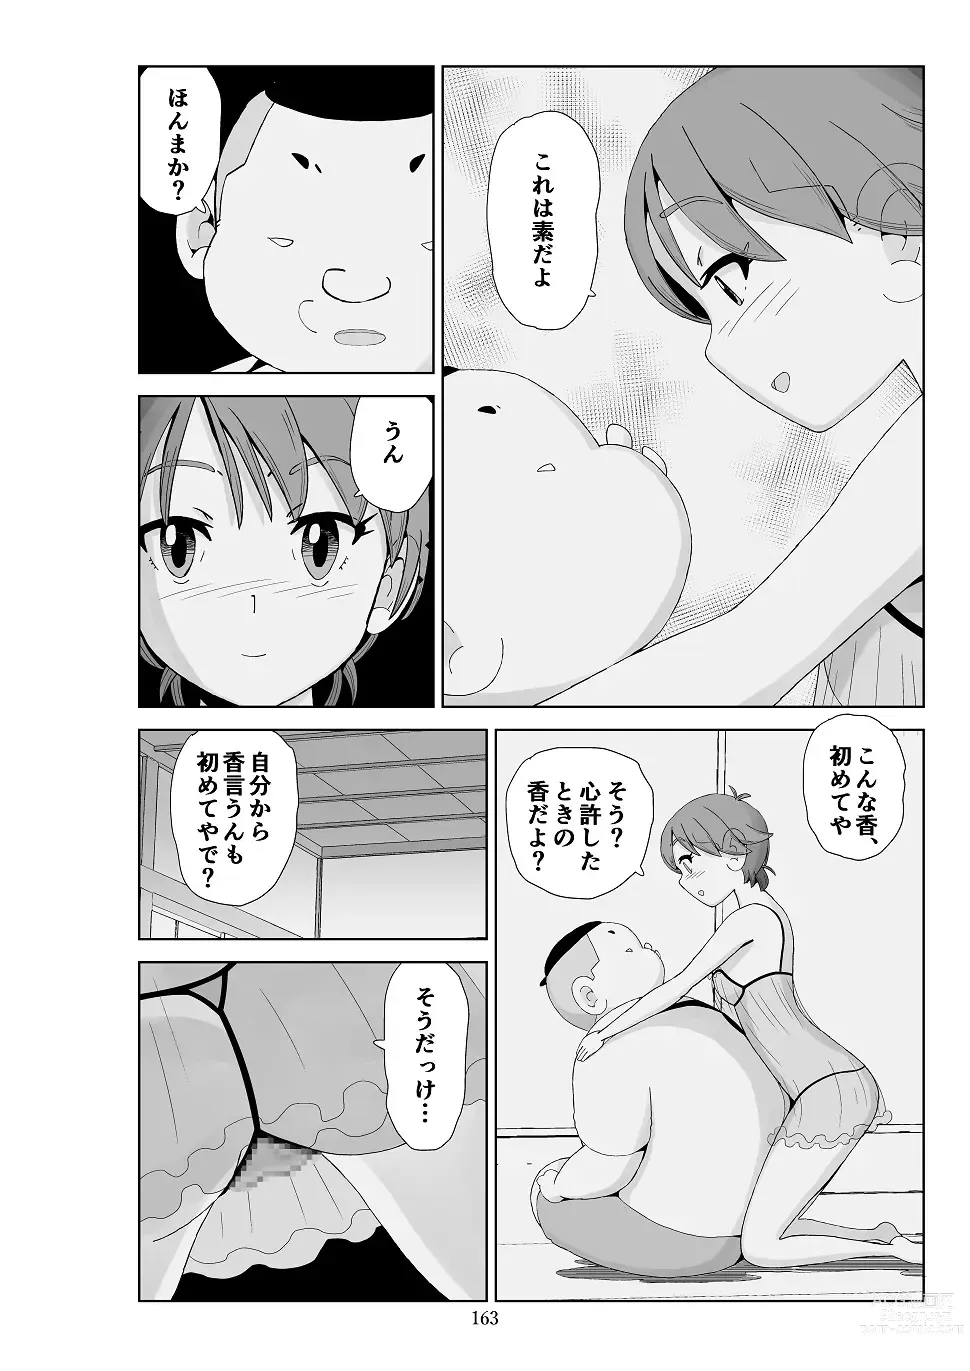 Page 164 of doujinshi Futoshi 3